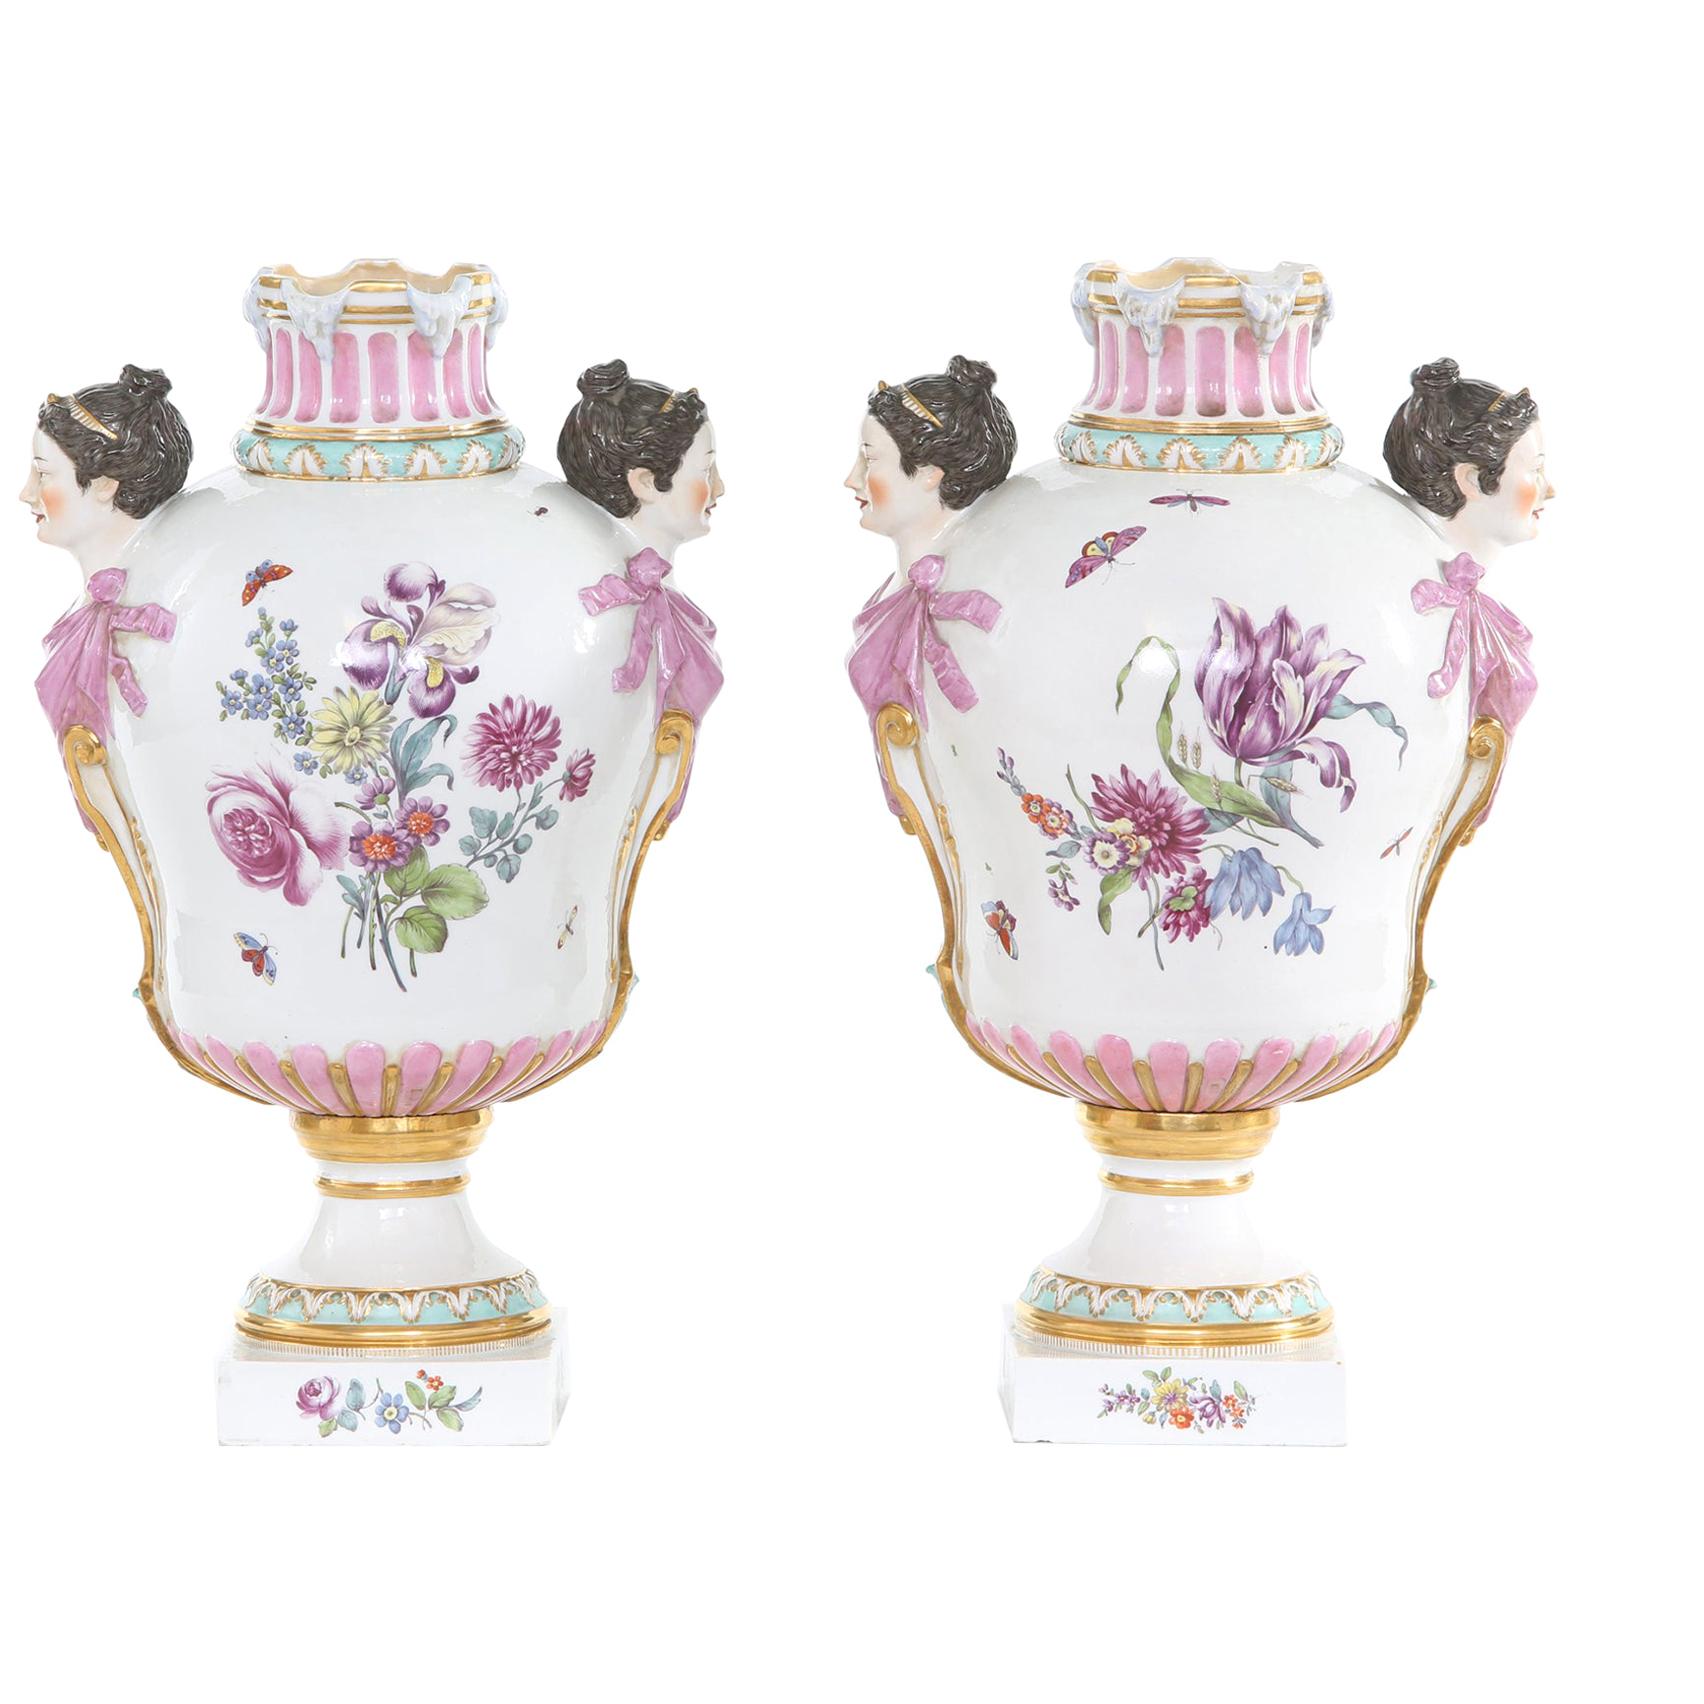 19th Century KPM Pair Gilt / Foral Porcelain Decorative Urns For Sale